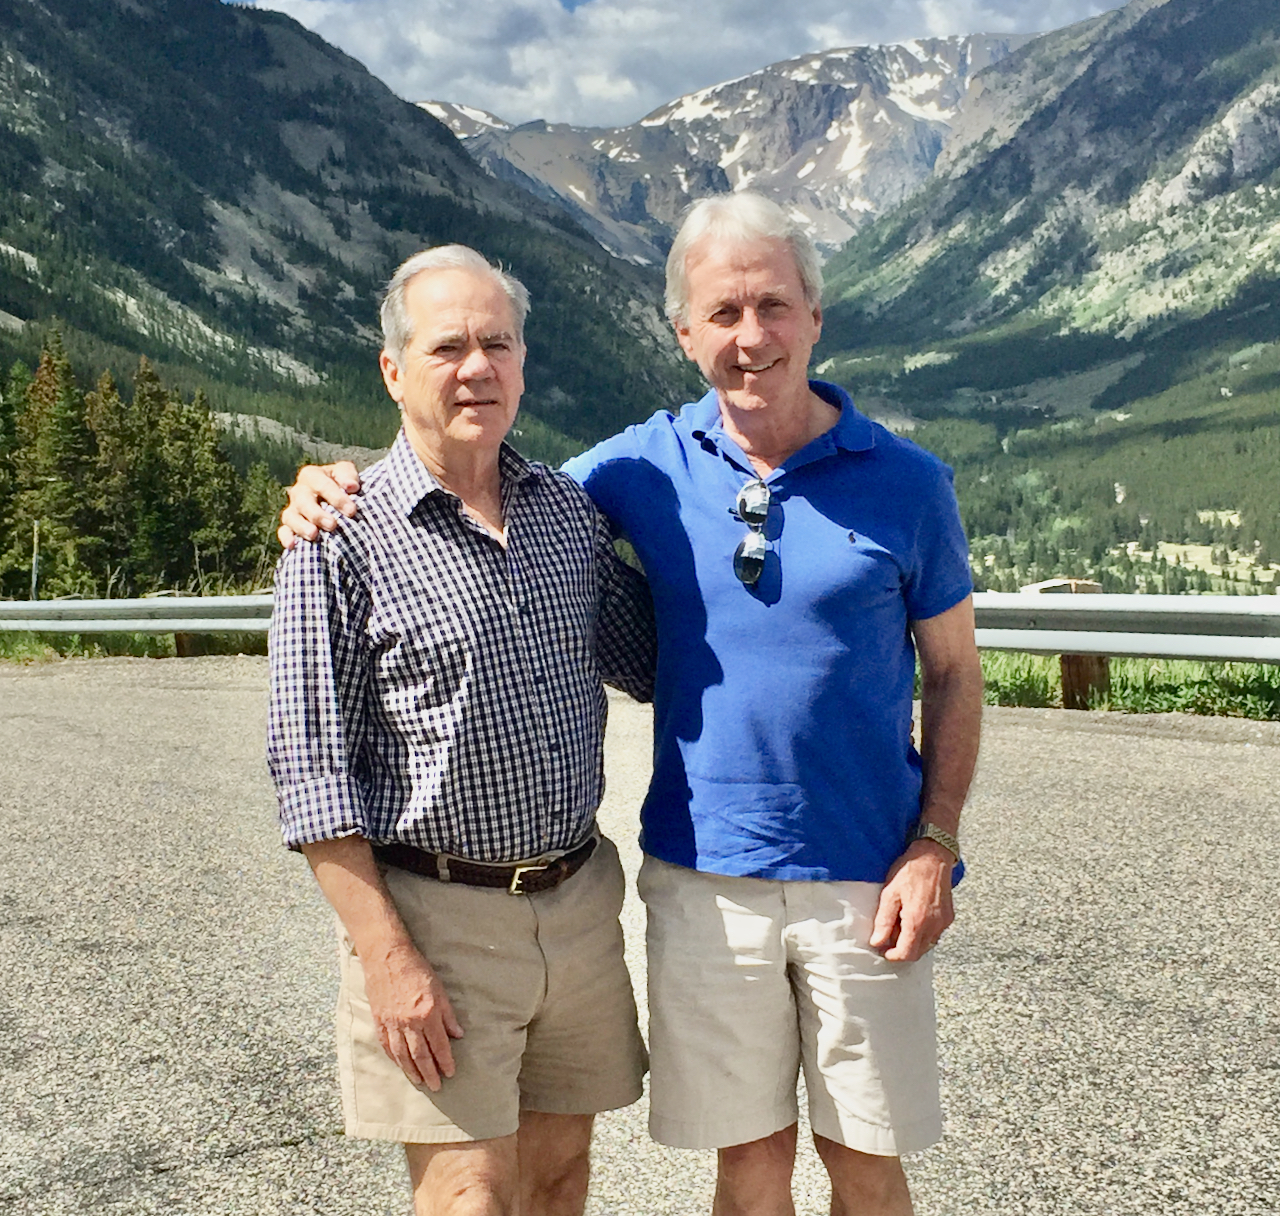 John and Jim in Glacier National Park, Montana, 2015.